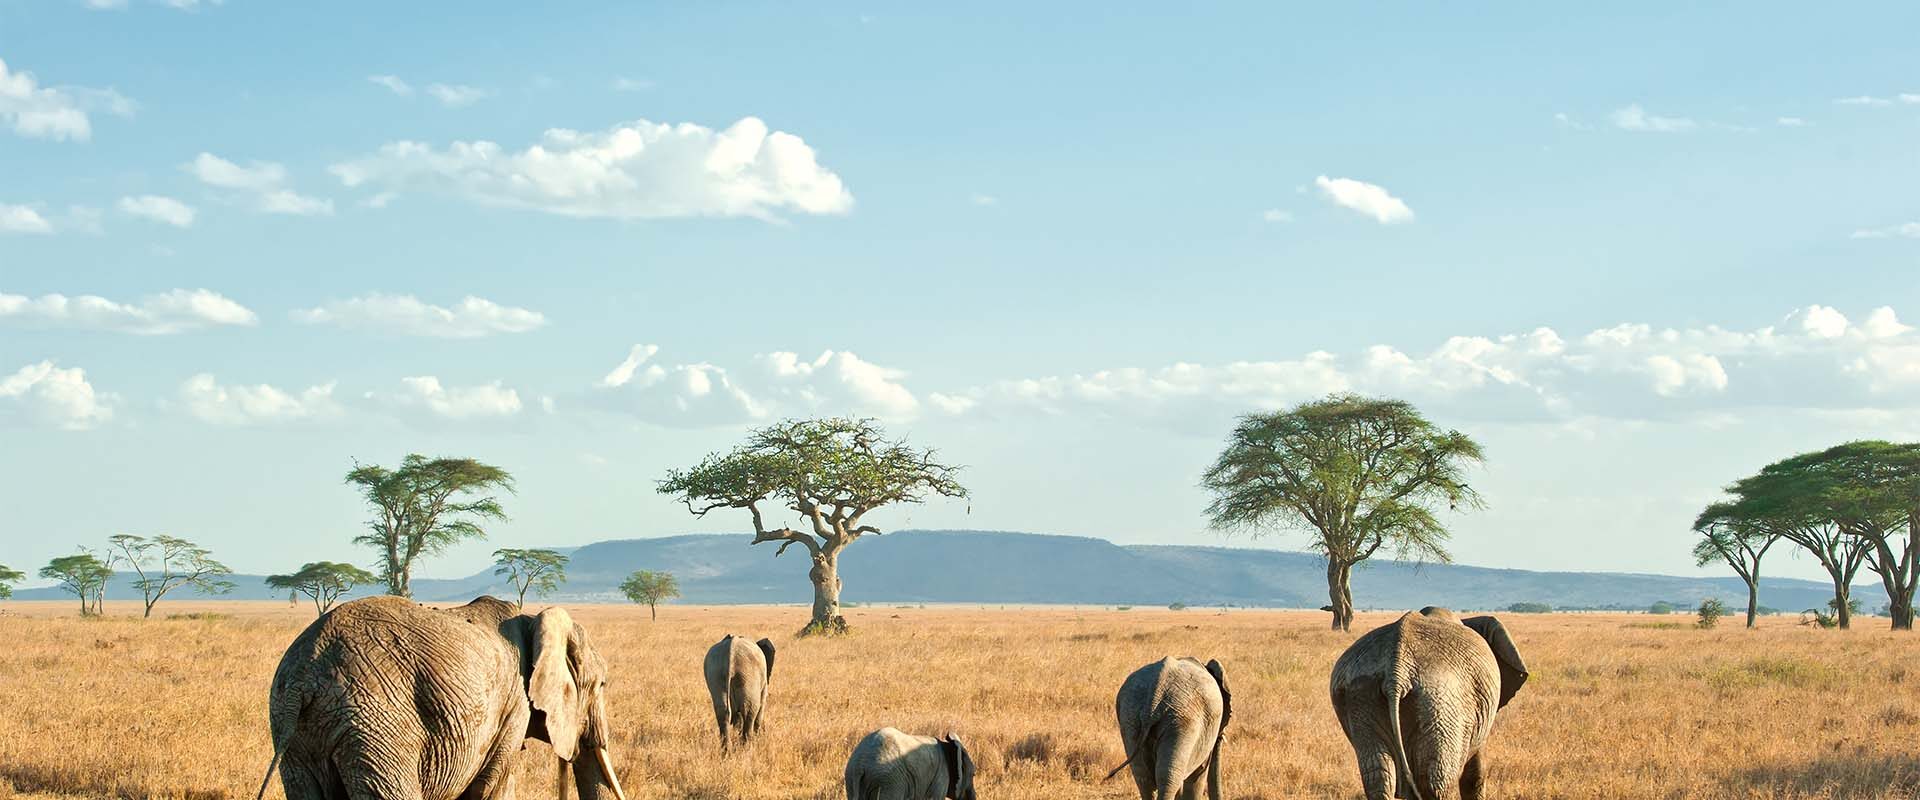 elephant family walking in Tanzania